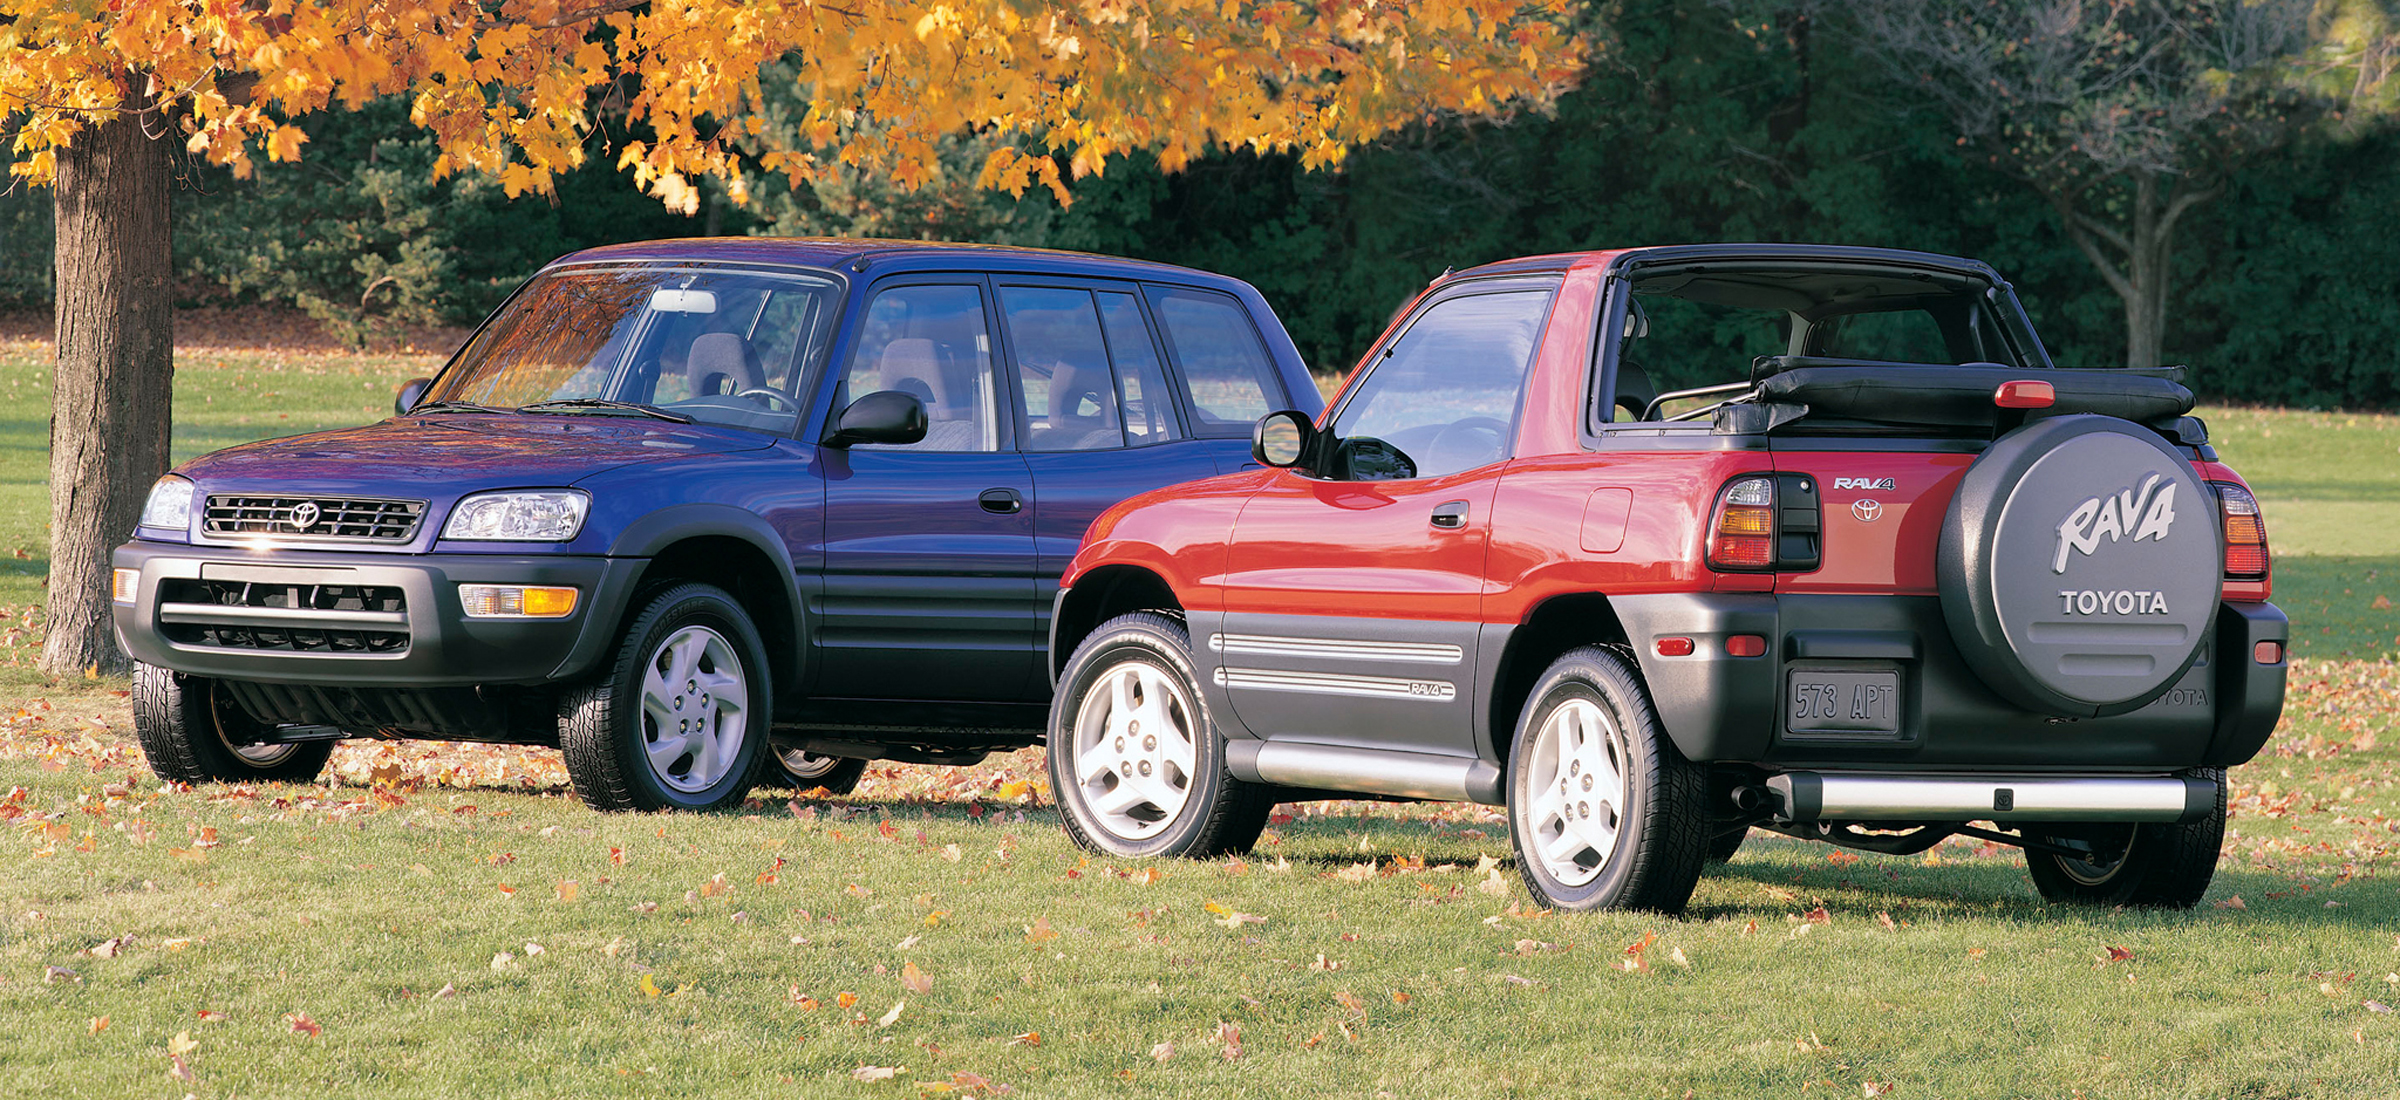 24 lata i 5 generacji: krótka historia Toyoty RAV4